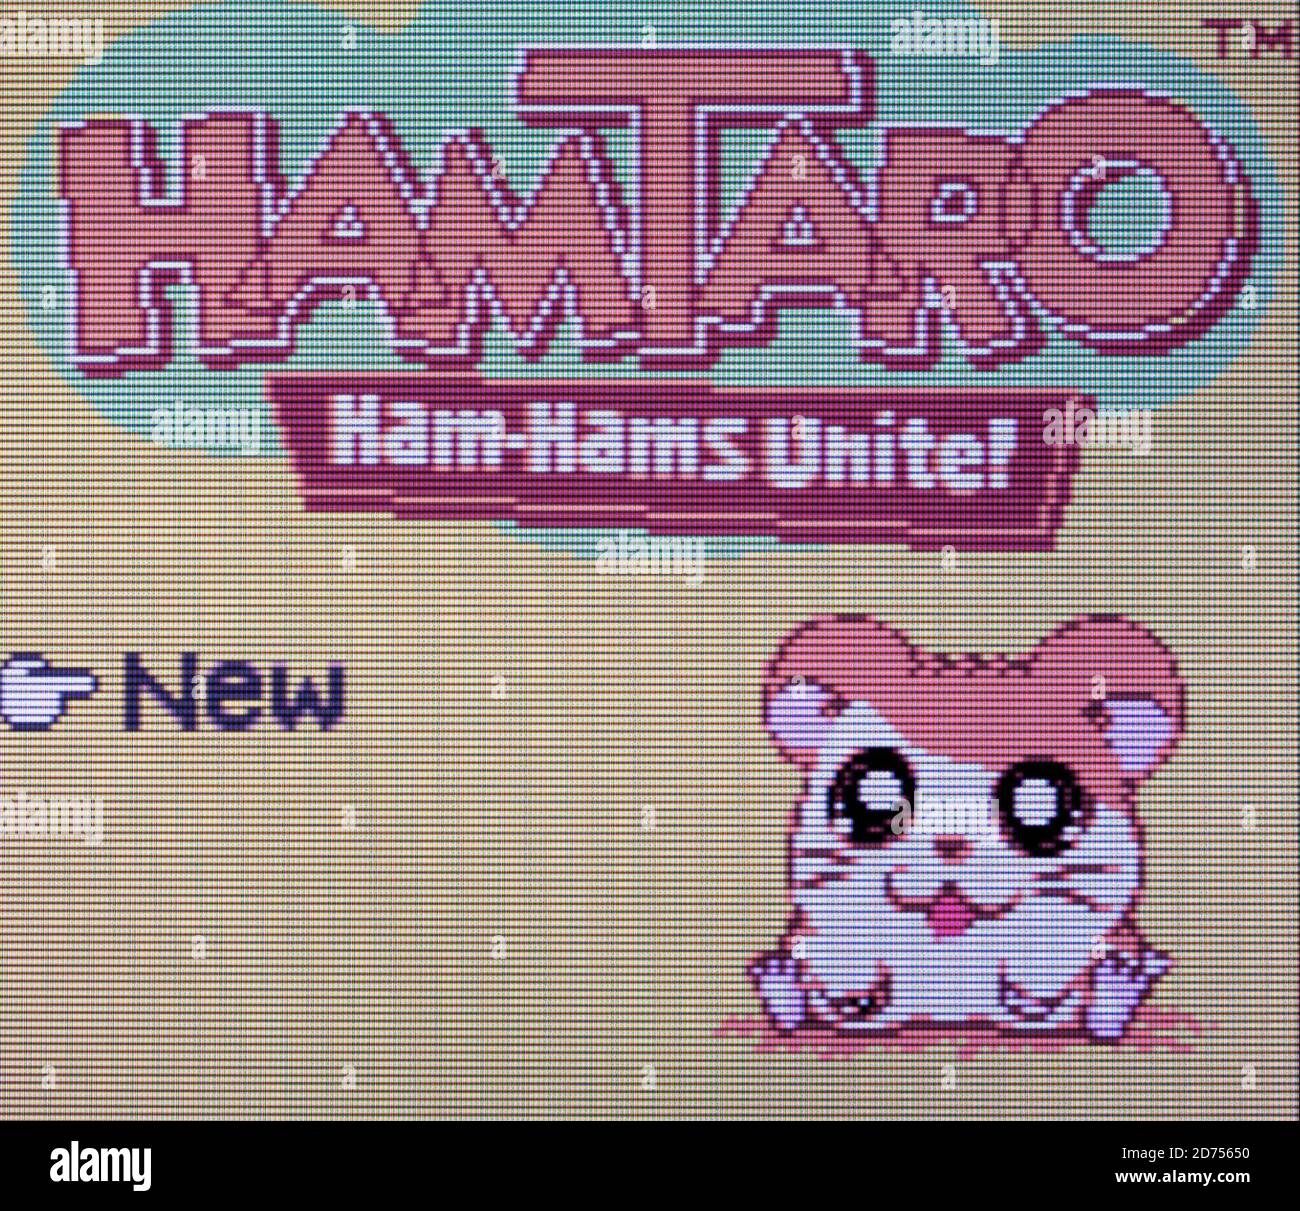 Hamtaro - Nintendo Game Boy Color Videogame - Editorial use only Stock Photo